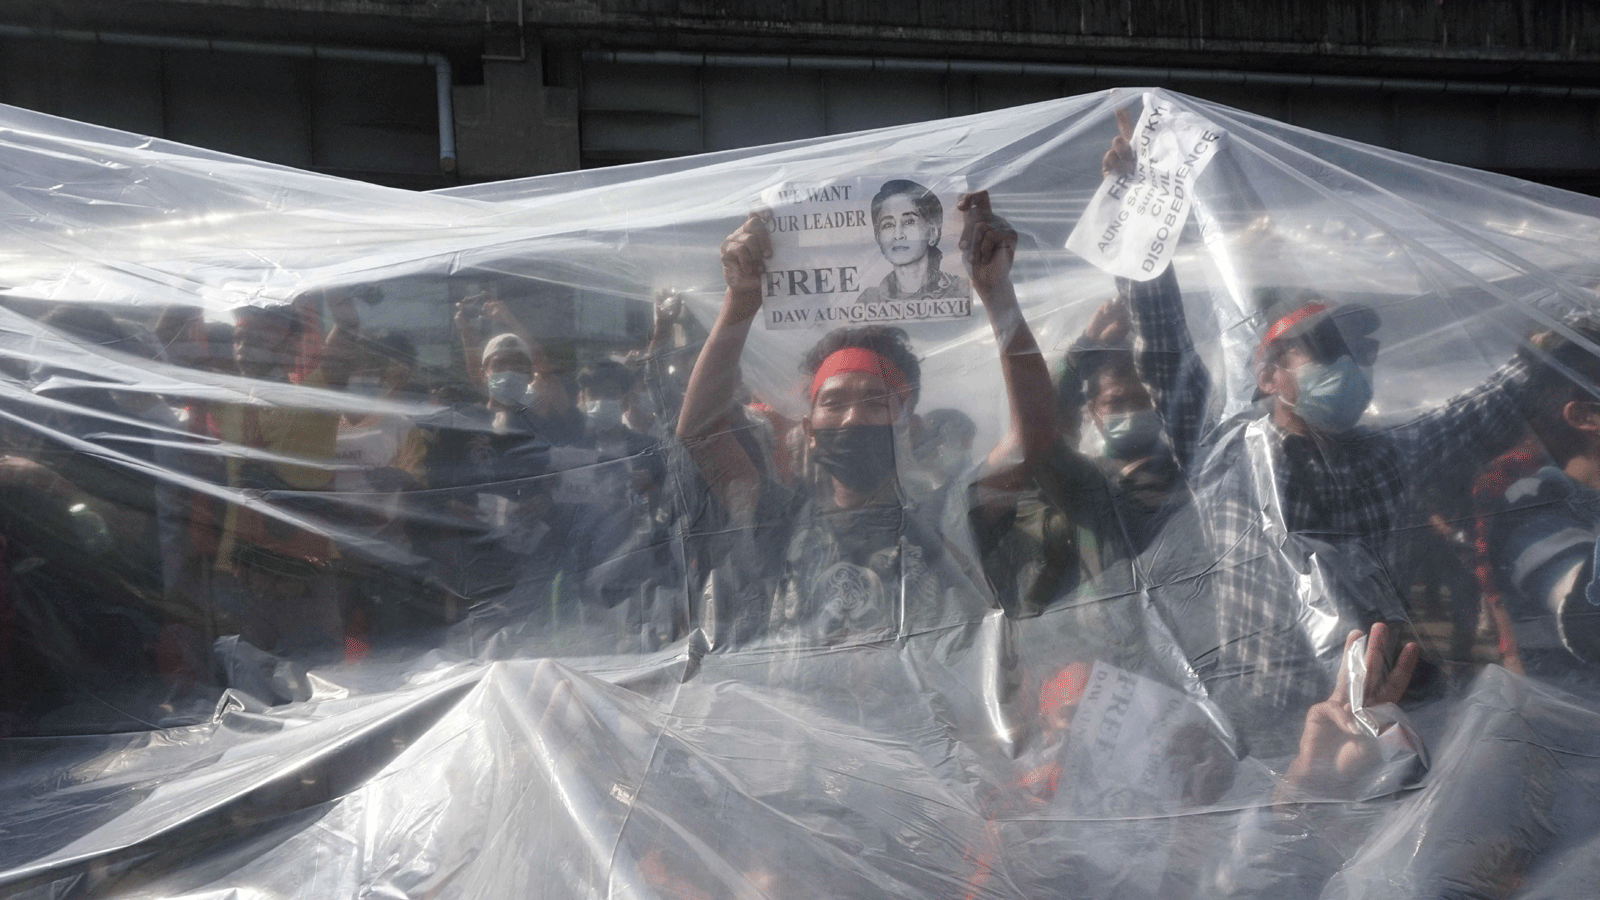 متظاهرون يقفون تحت غطاء بلاستيكي للحماية من خراطيم المياه التابعة للشرطة أثناء مشاركتهم في مظاهرة ضد الانقلاب العسكري في يانغون. بتاريخ 9 شباط/ فبراير 2021